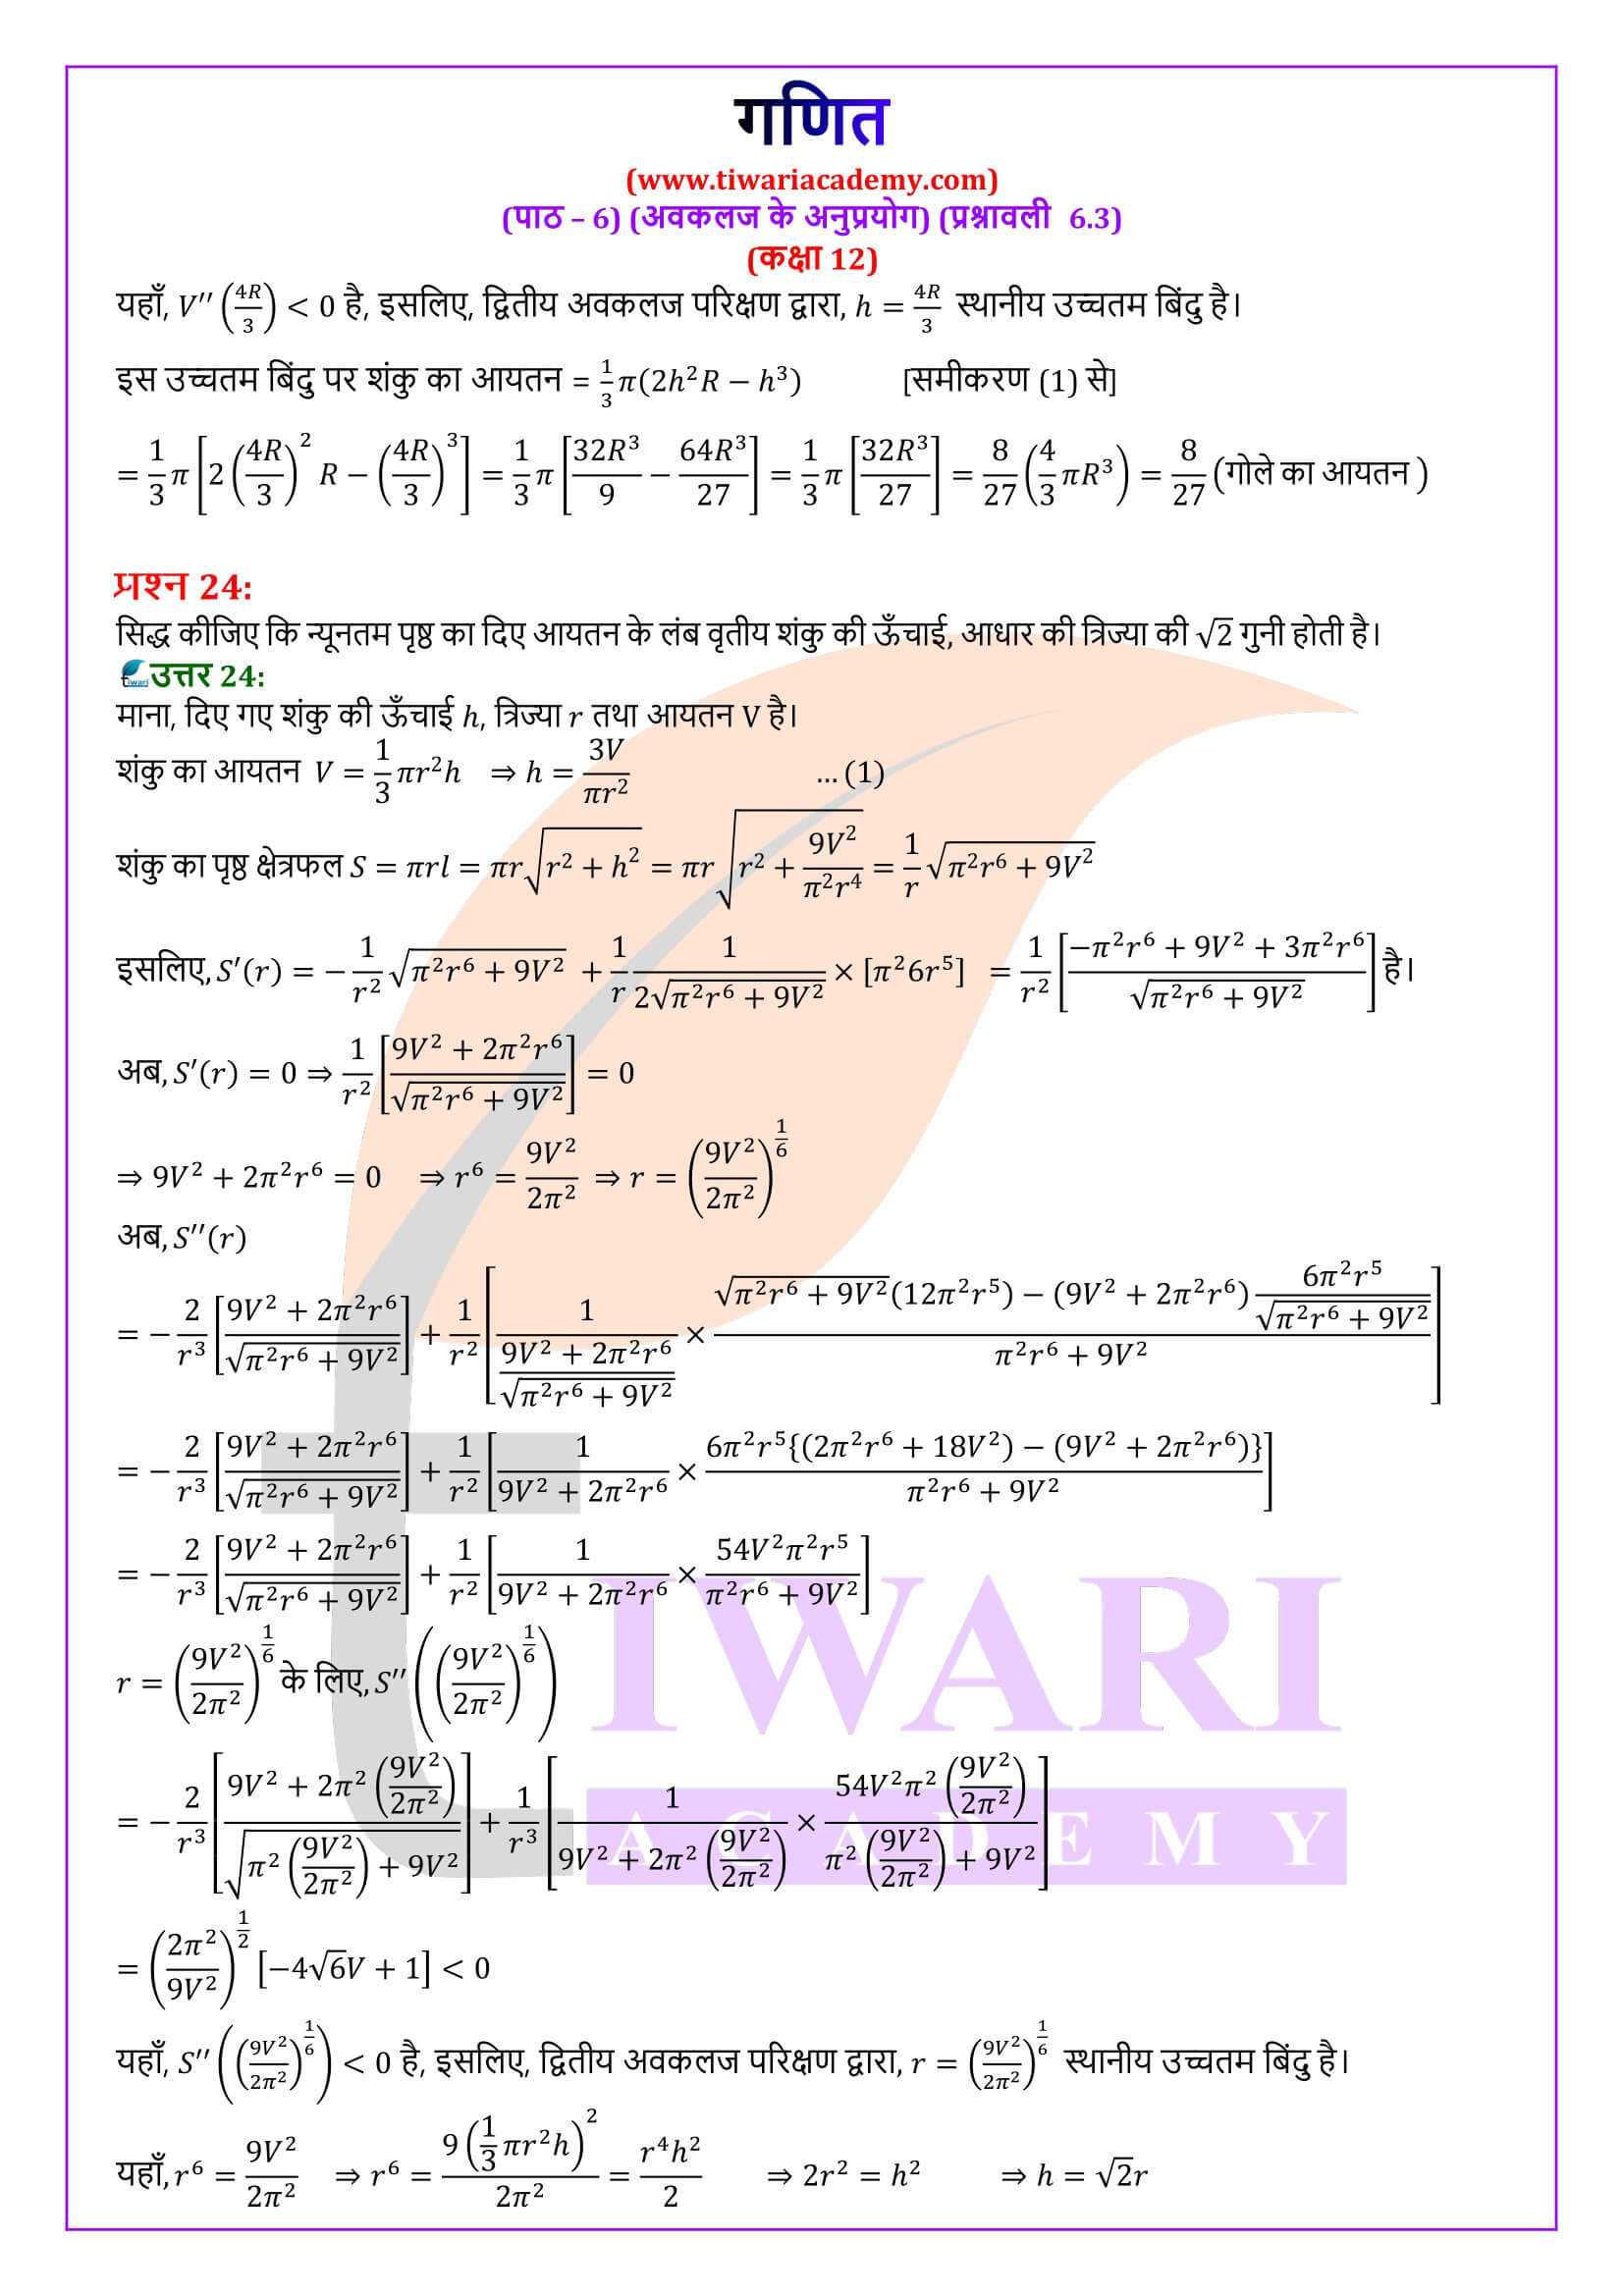 कक्षा 12 गणित अभ्यास 6.3 के हल हिंदी में